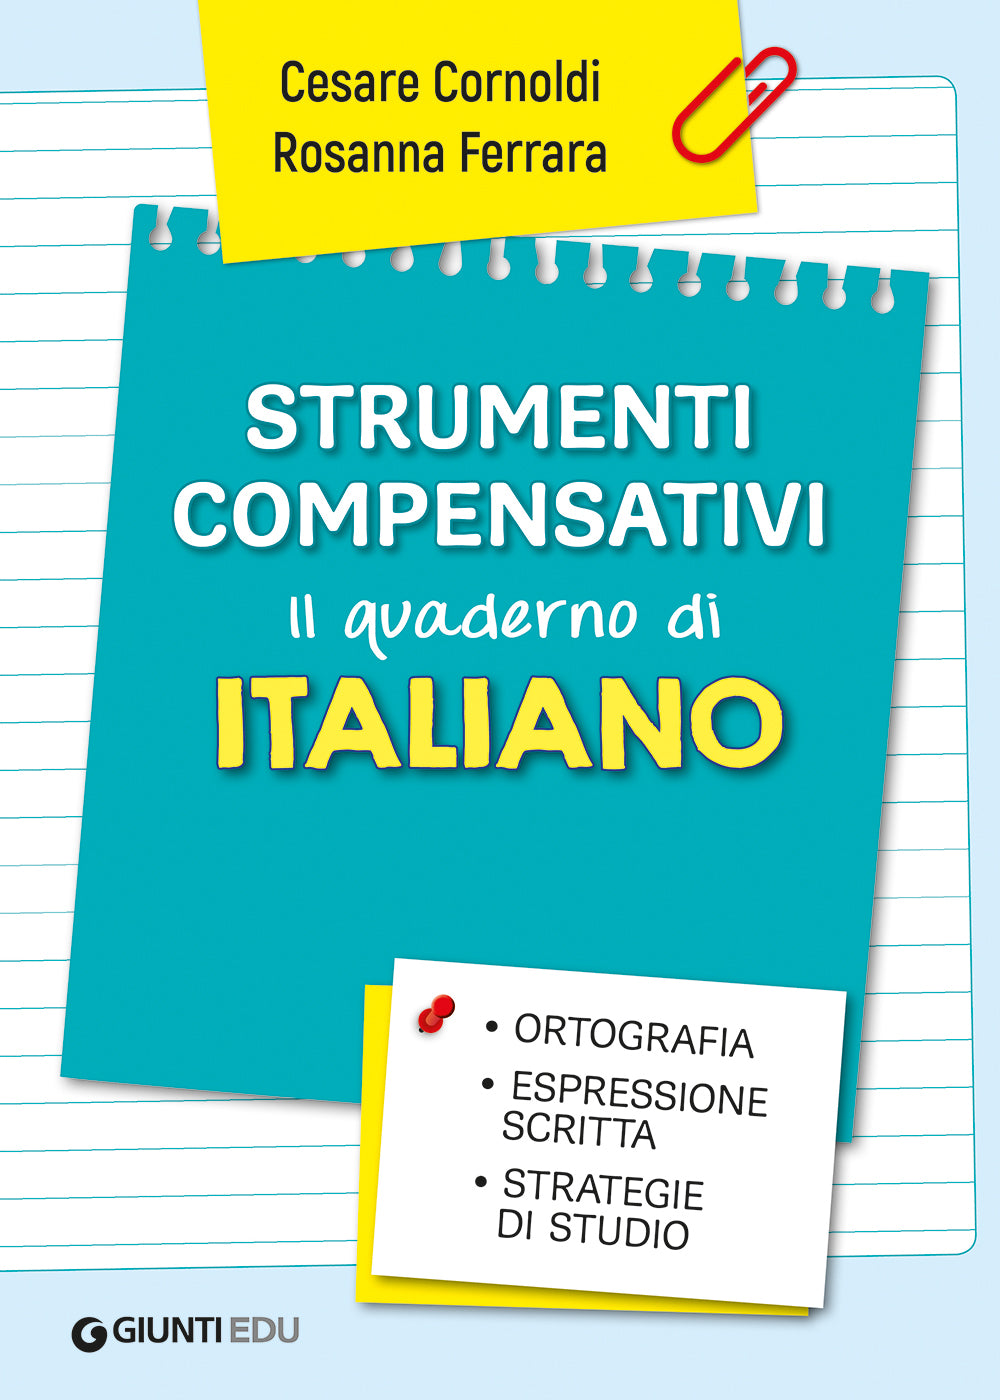 Strumenti compensativi - Il quaderno di Italiano::Ortografia, espressione scritta e strategie di studio